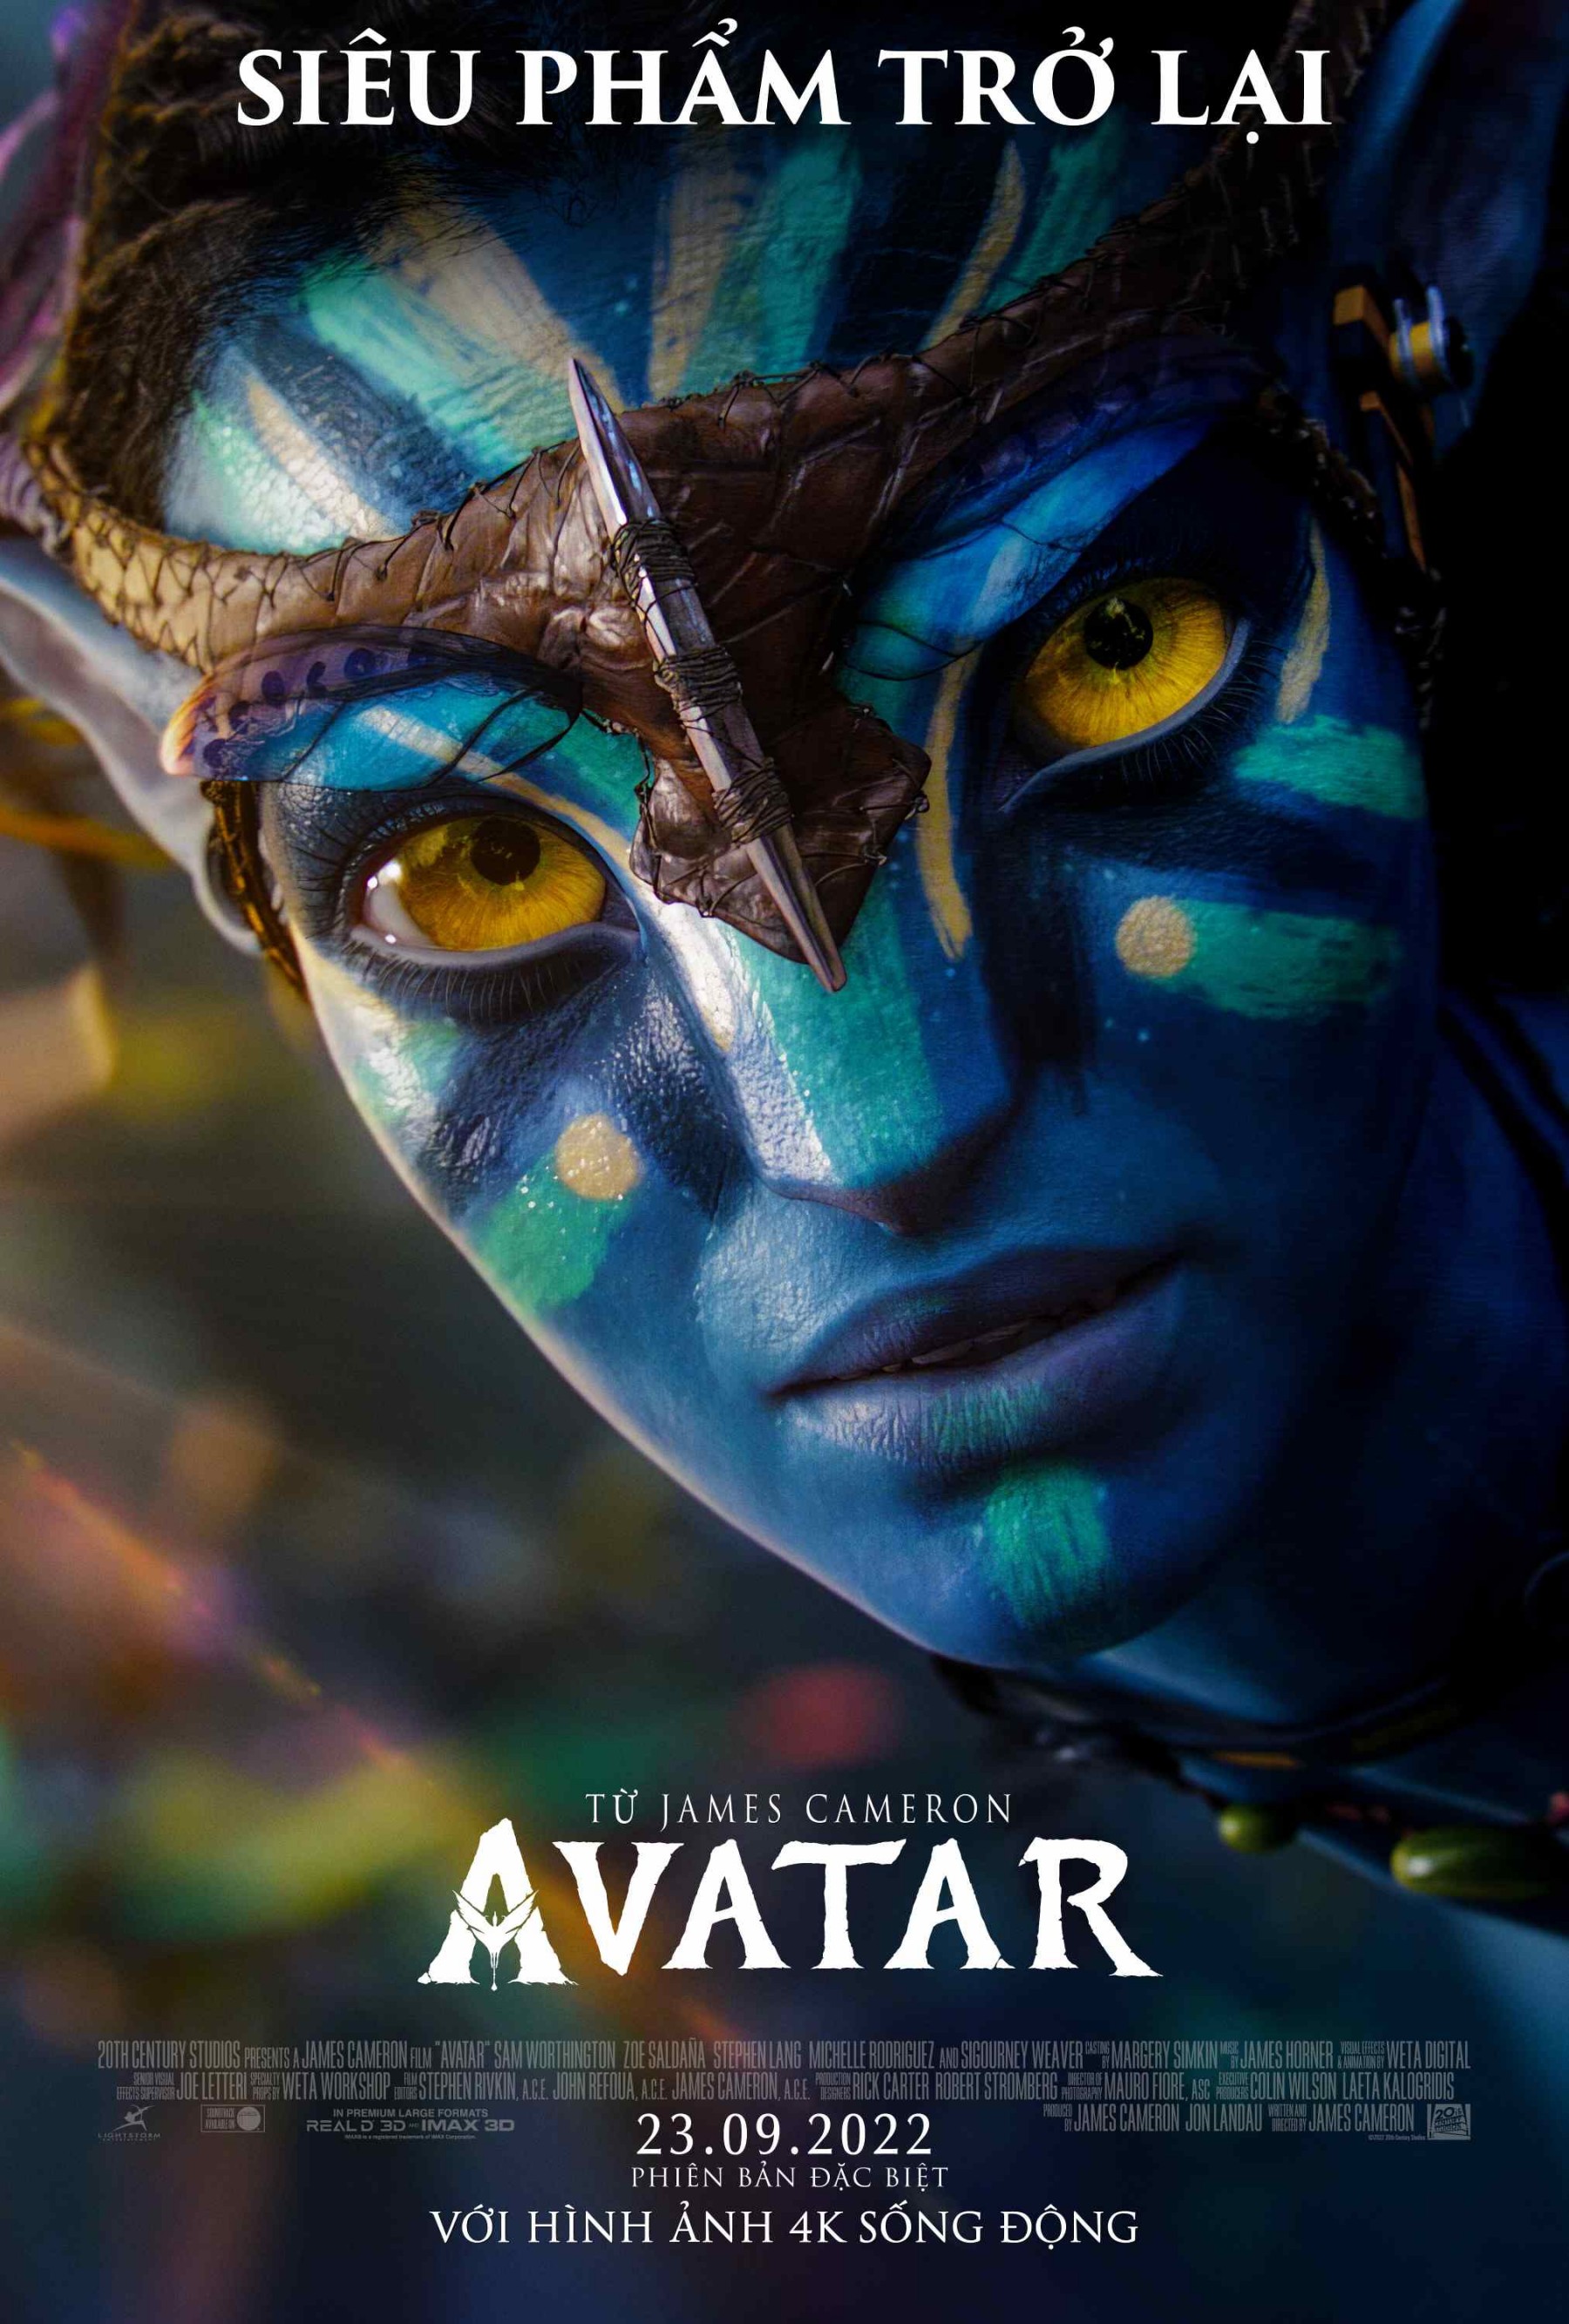 Suất Chiếu Phim Avatar 2: Điểm Đến Không Thể Bỏ Qua Cho Người Hâm Mộ Điện Ảnh